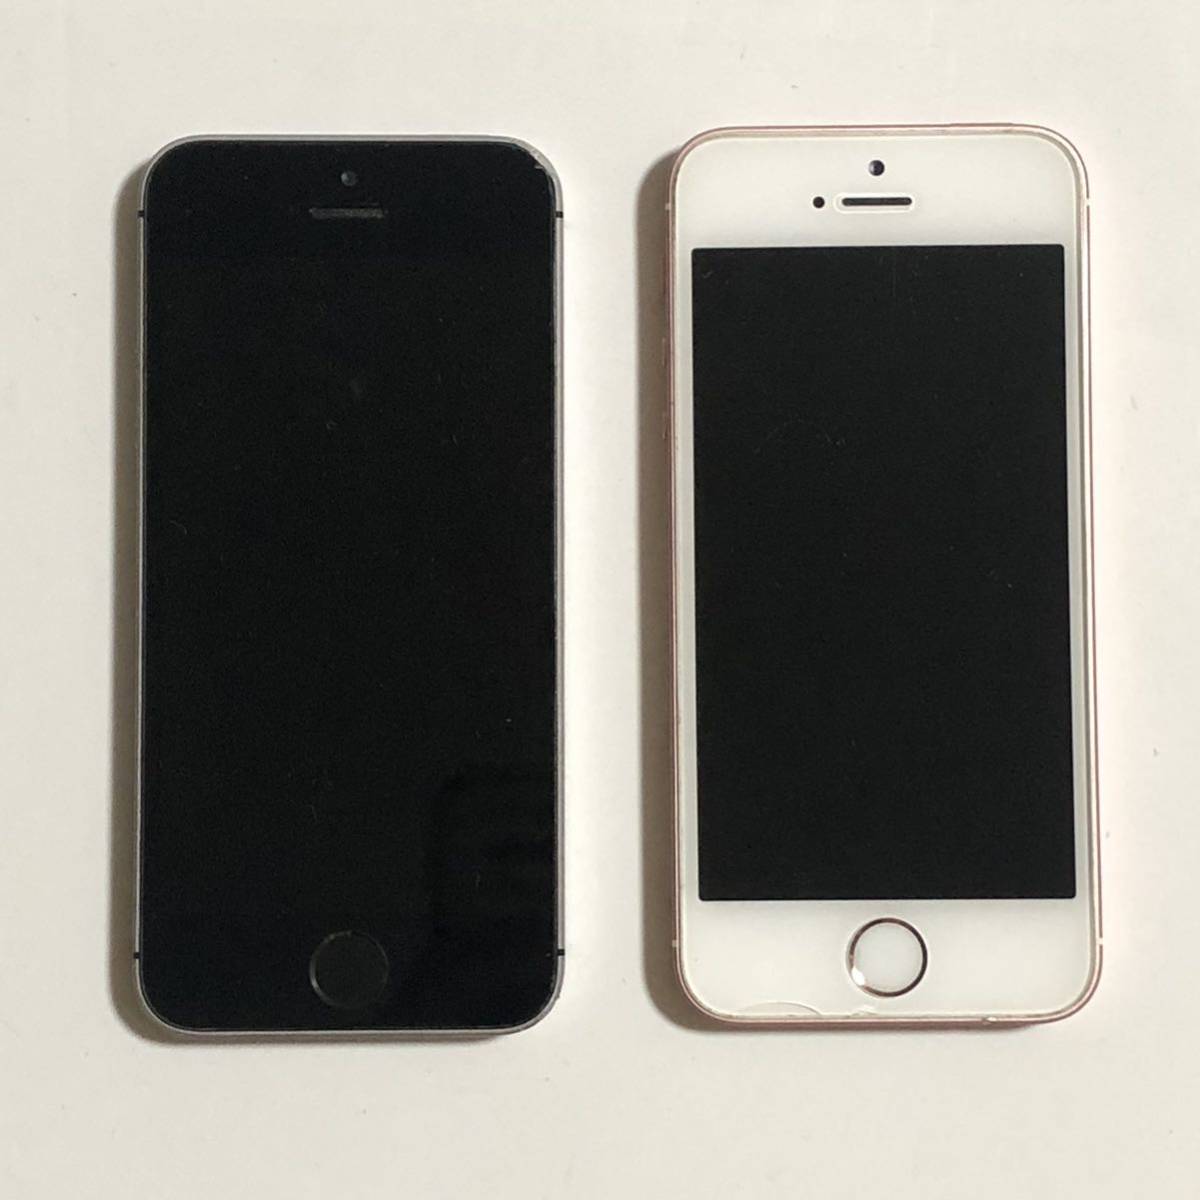 SIMフリー iPhone SE 16GB ×2台 83% 第一世代 スペースグレー ローズゴールド iPhoneSE アイフォン Apple アップル スマホ 送料無料